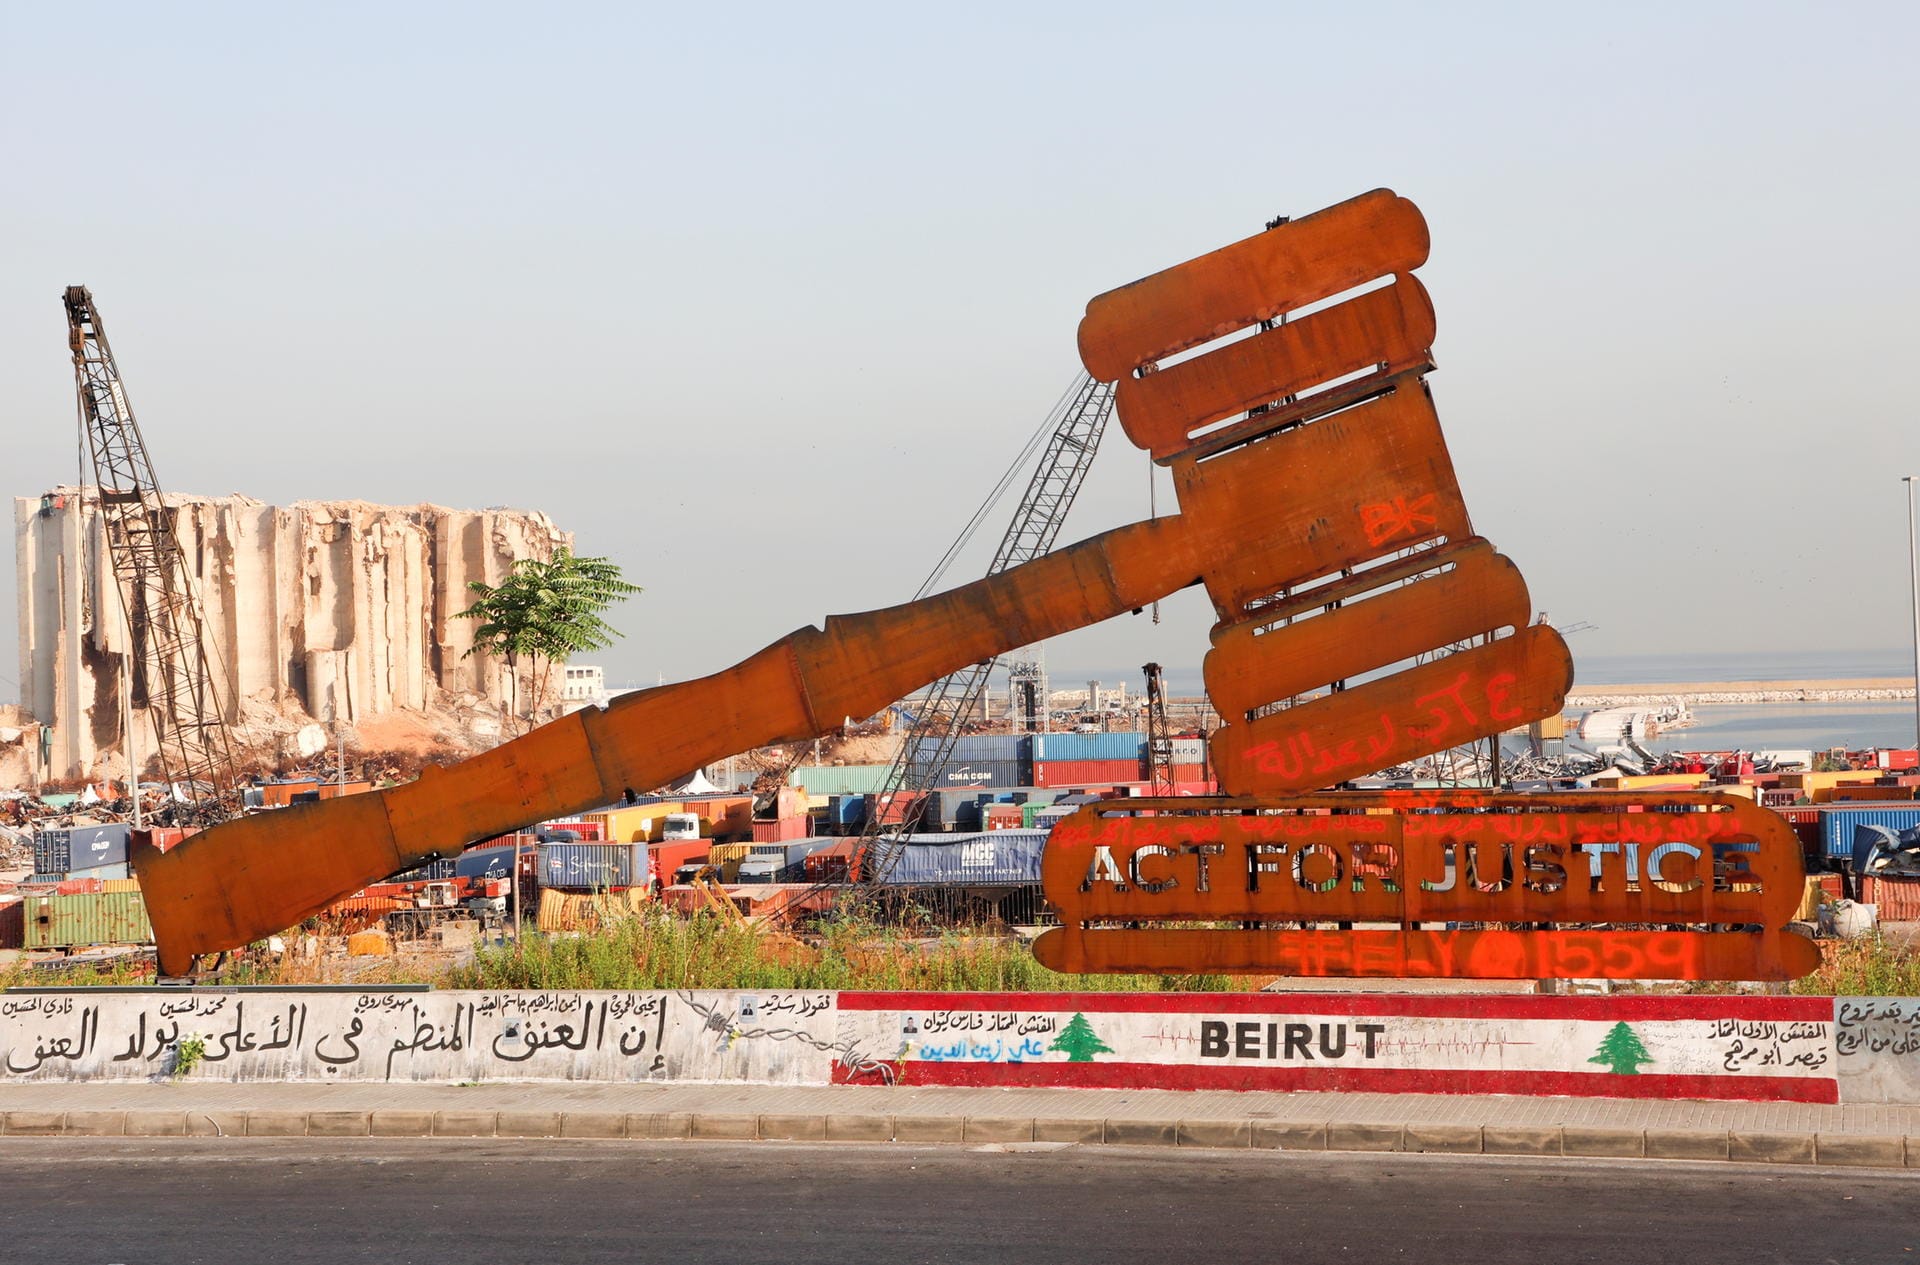 Ein Denkmal mit dem Symbol der Gerechtigkeit steht vor den Getreidesilos in Beirut: Die Opfer und Angehörige kämpfen immer noch um Gerechtigkeit und Wahrheit, sagte eine Sprecherin der Vereinten Nationen.